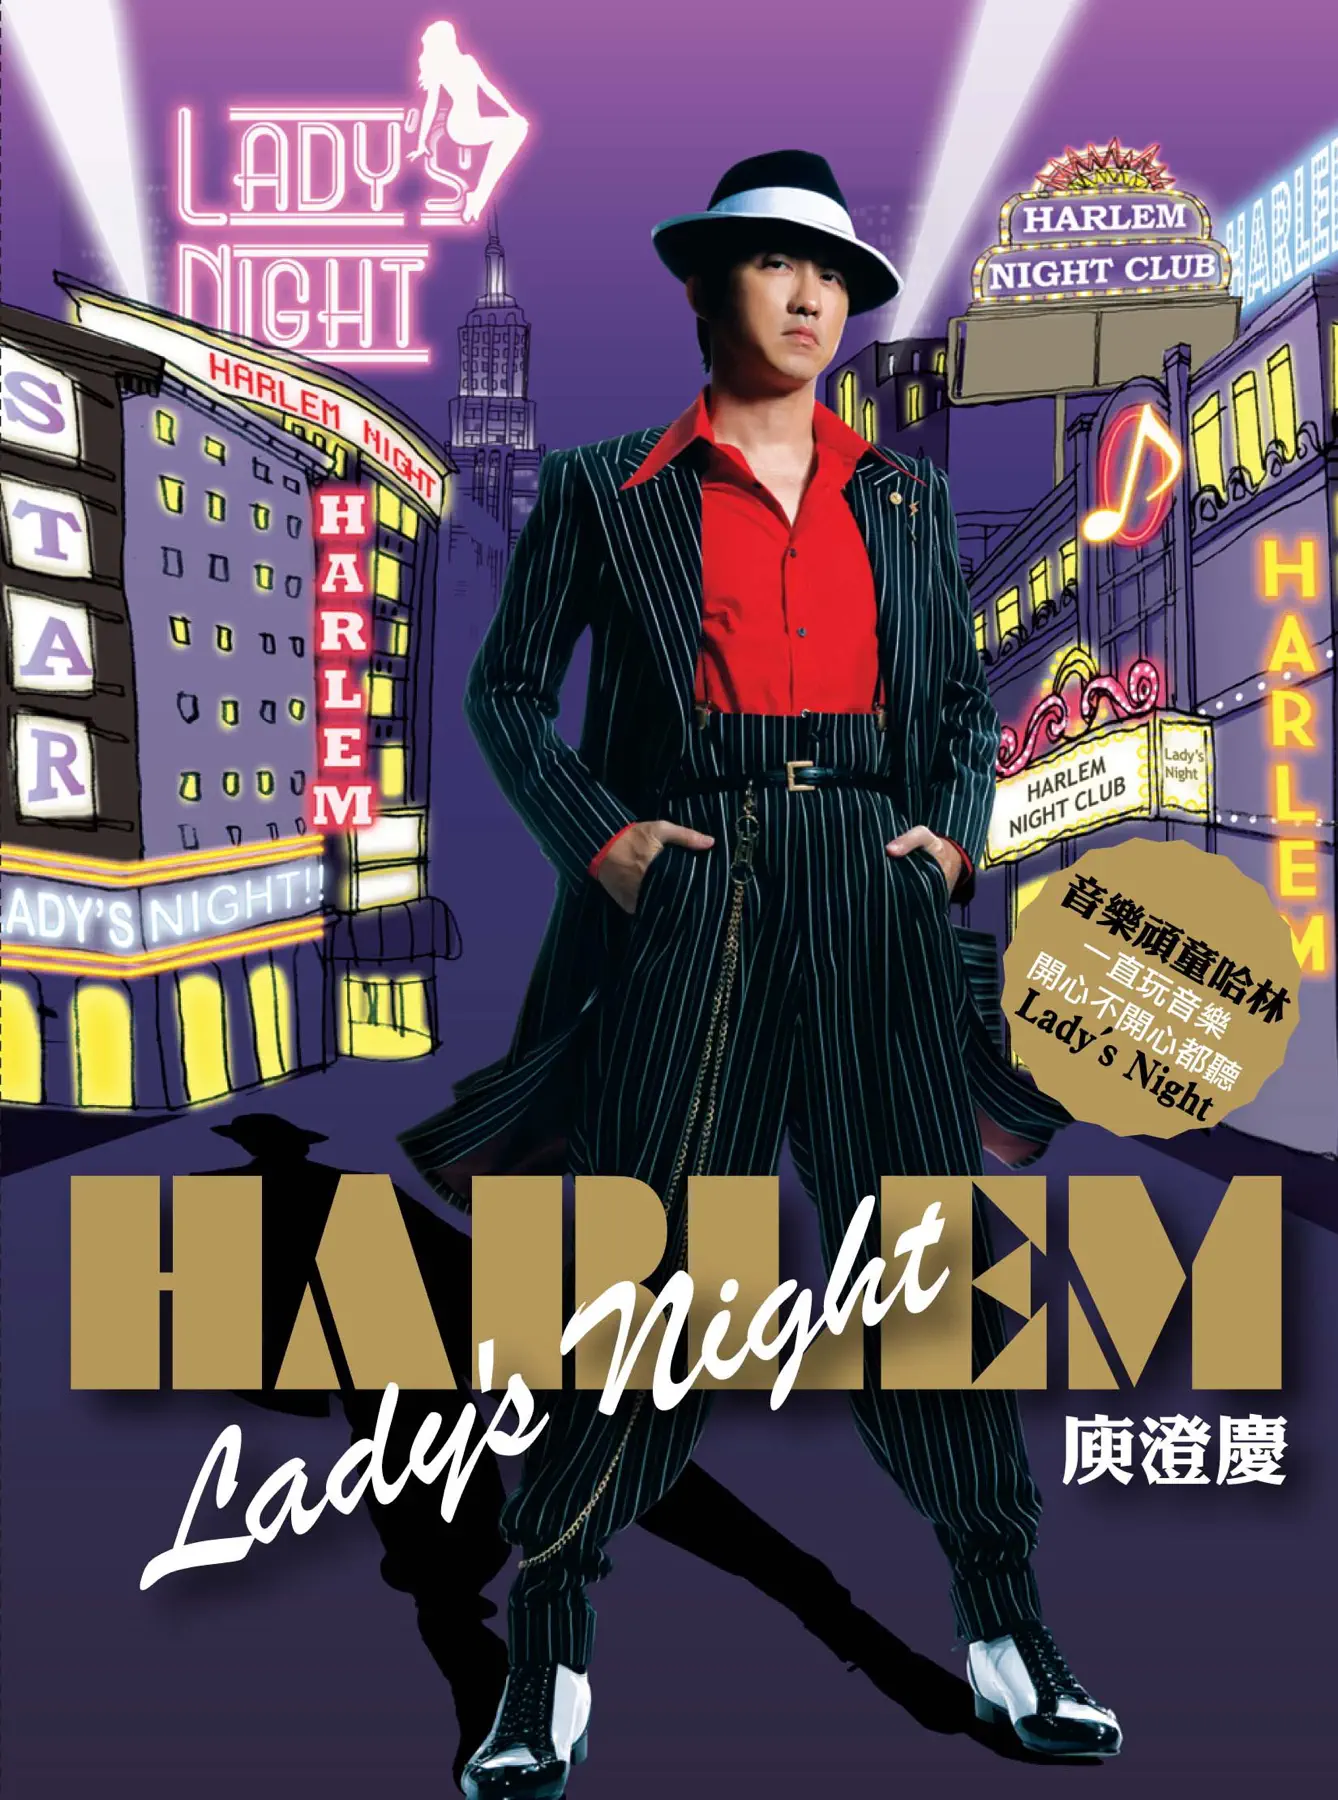 庾澄庆 - 哈林夜总会 Lady's Night (2008) [iTunes Plus AAC M4A]-新房子